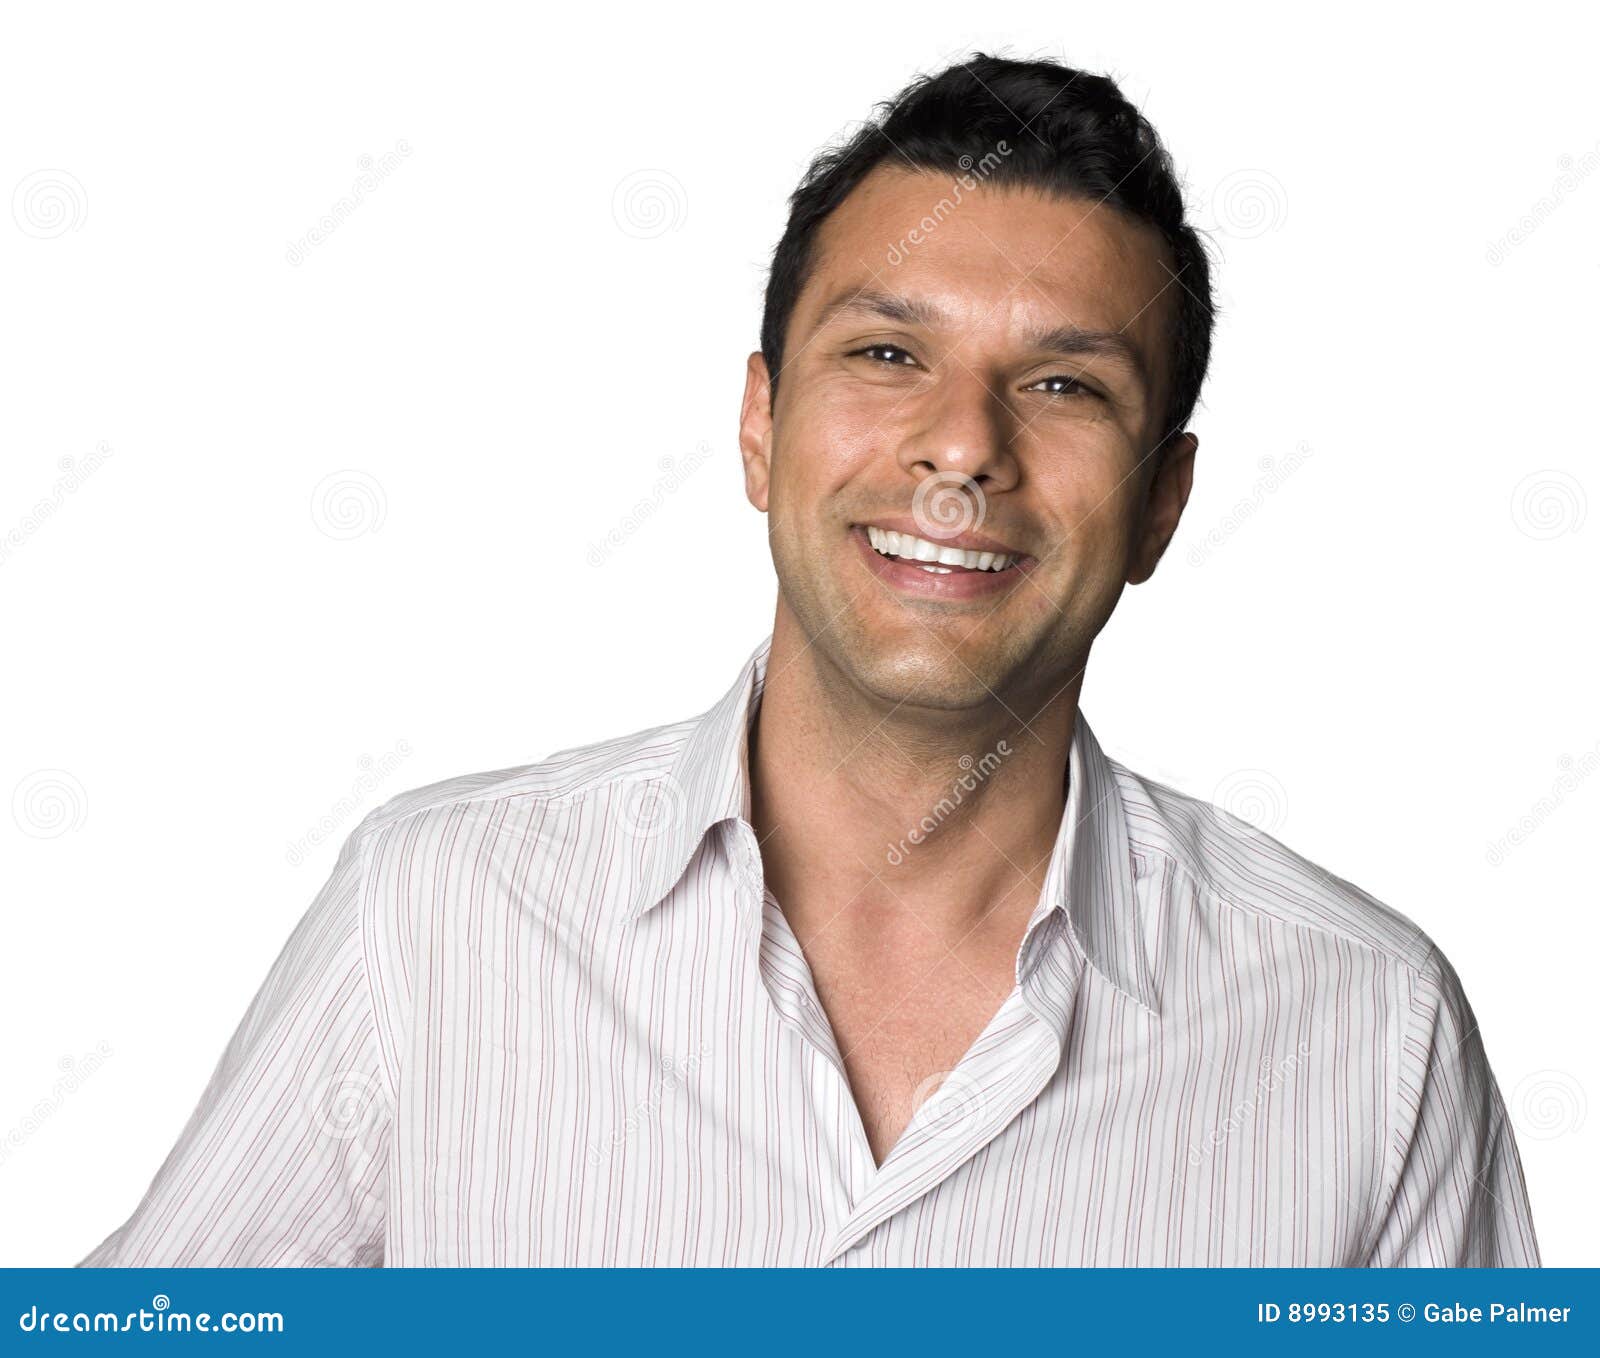 latino man smiling